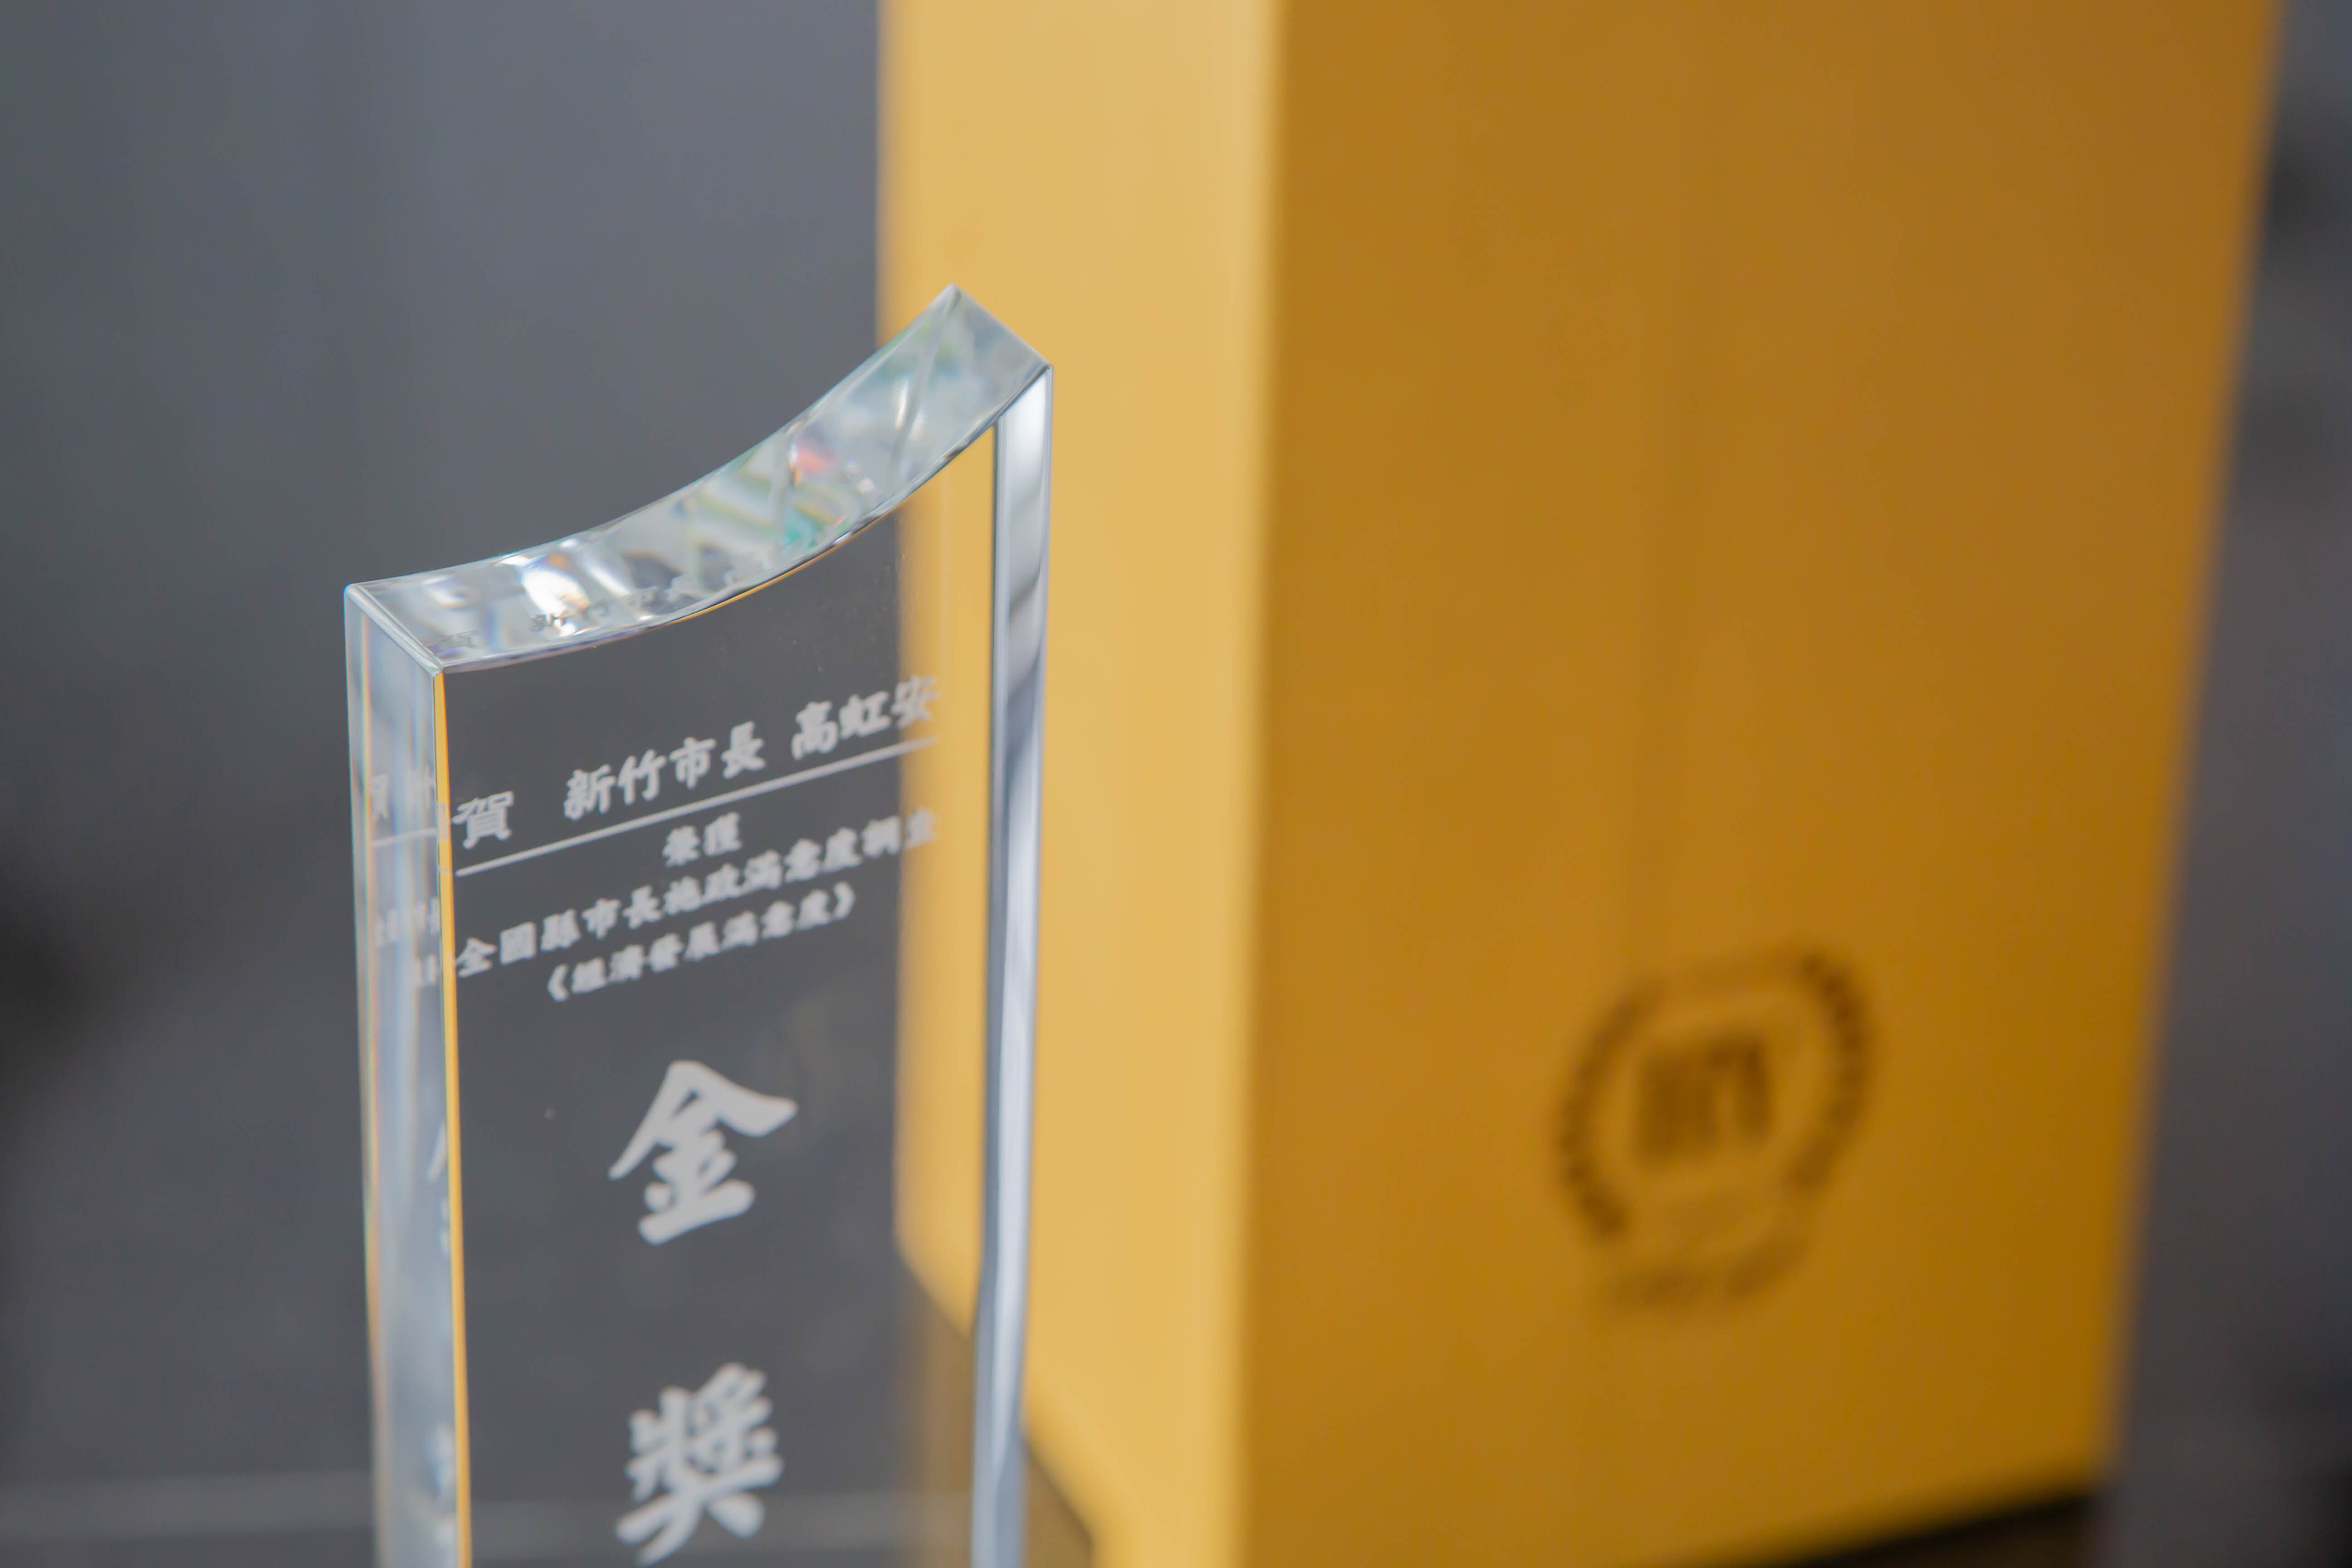 中國時報「有感施政 城市金獎」全國縣市施政度滿意度調查，新竹市在「經濟發展」項目榮獲金獎，「醫療衛生」及「教育品質」項目獲得銀獎殊榮。